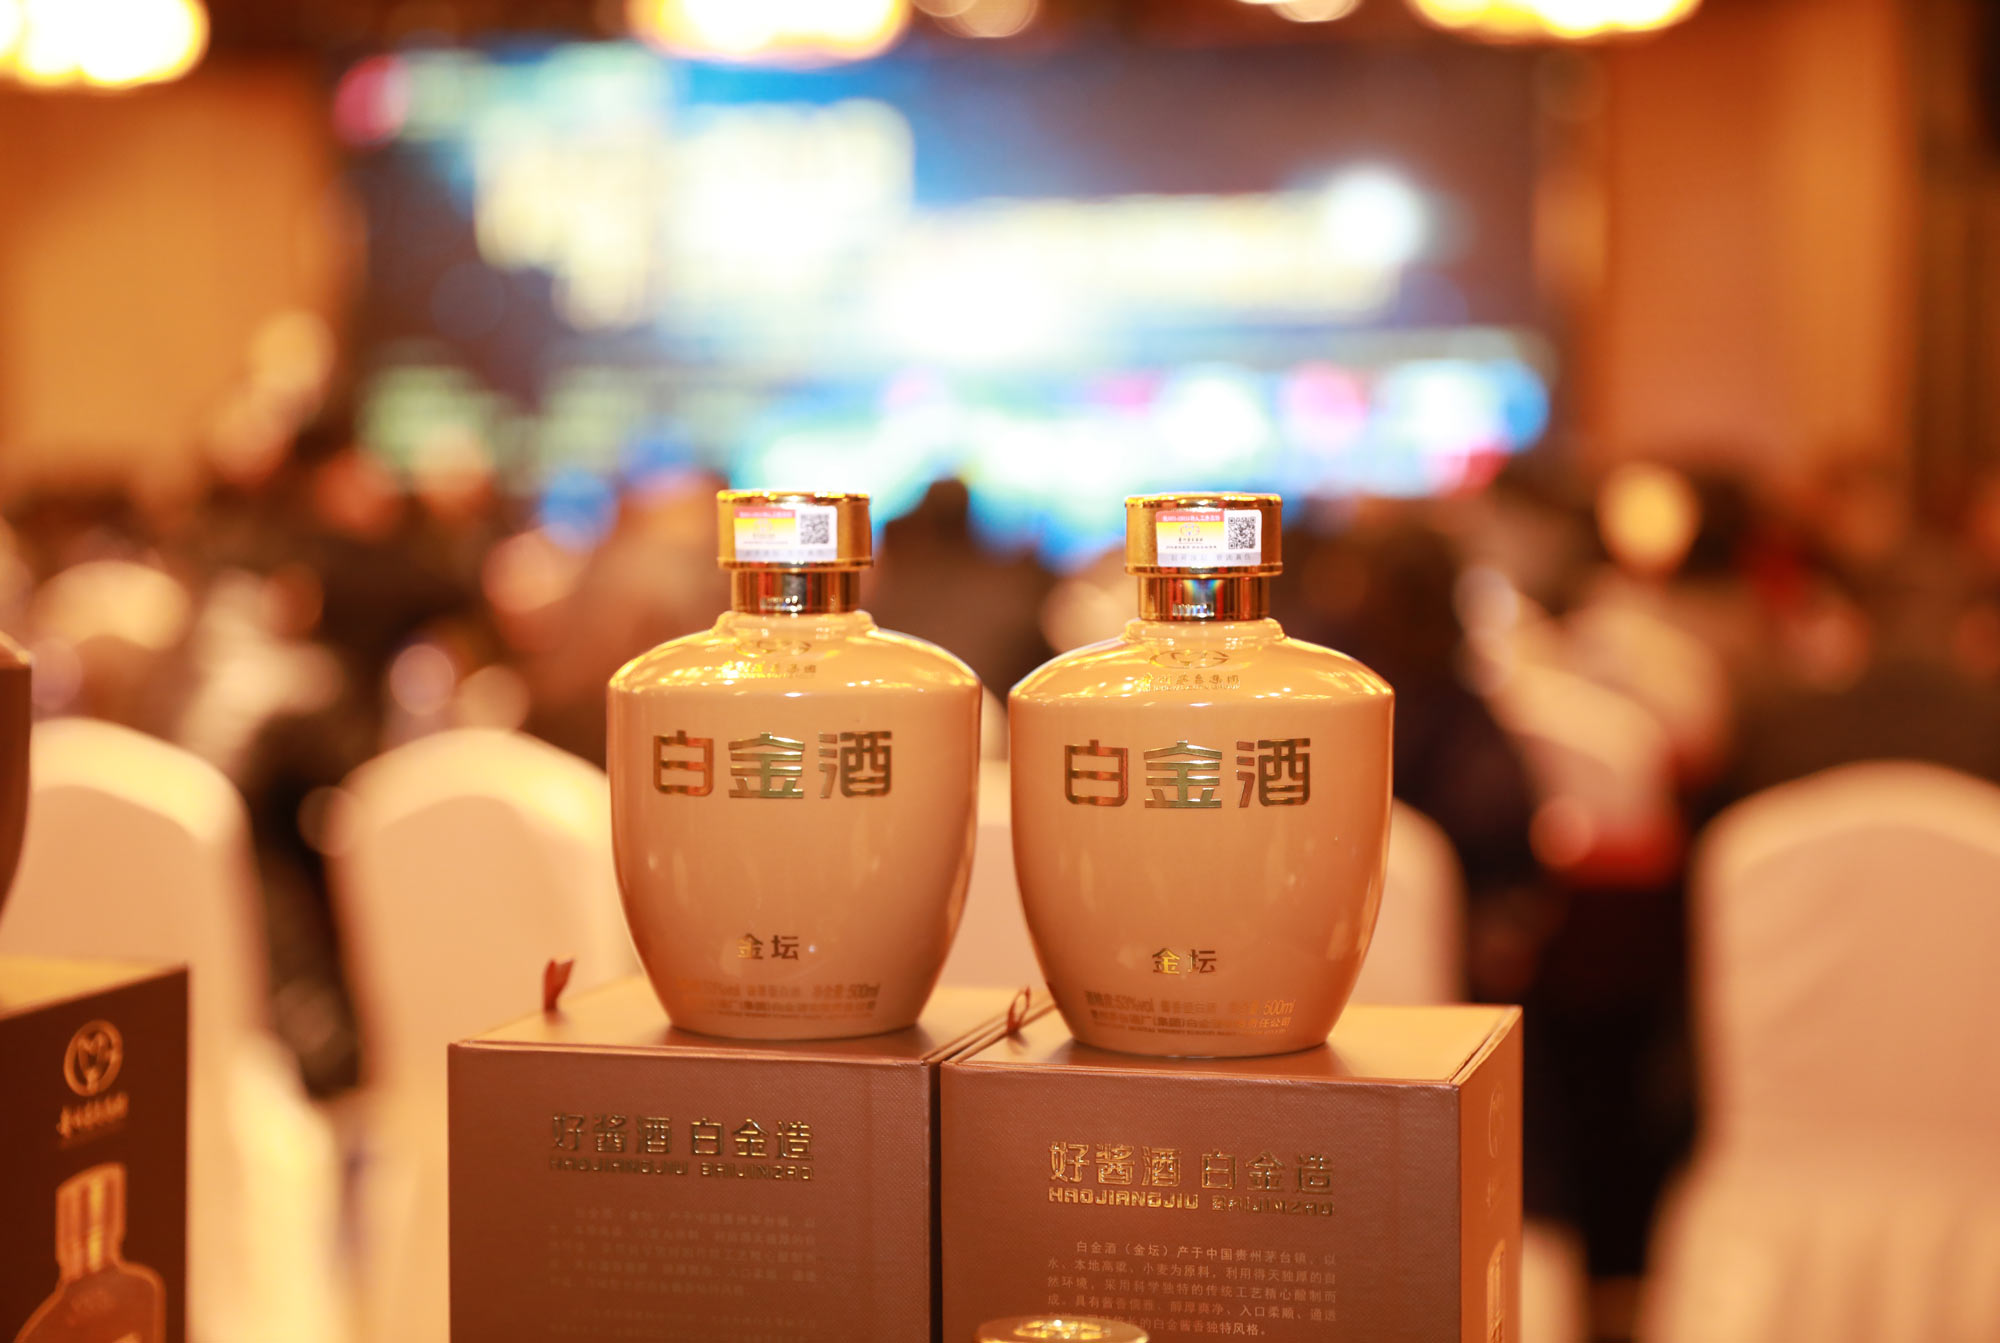 白金酒被评为“2018中国酒业京津冀最佳品牌”